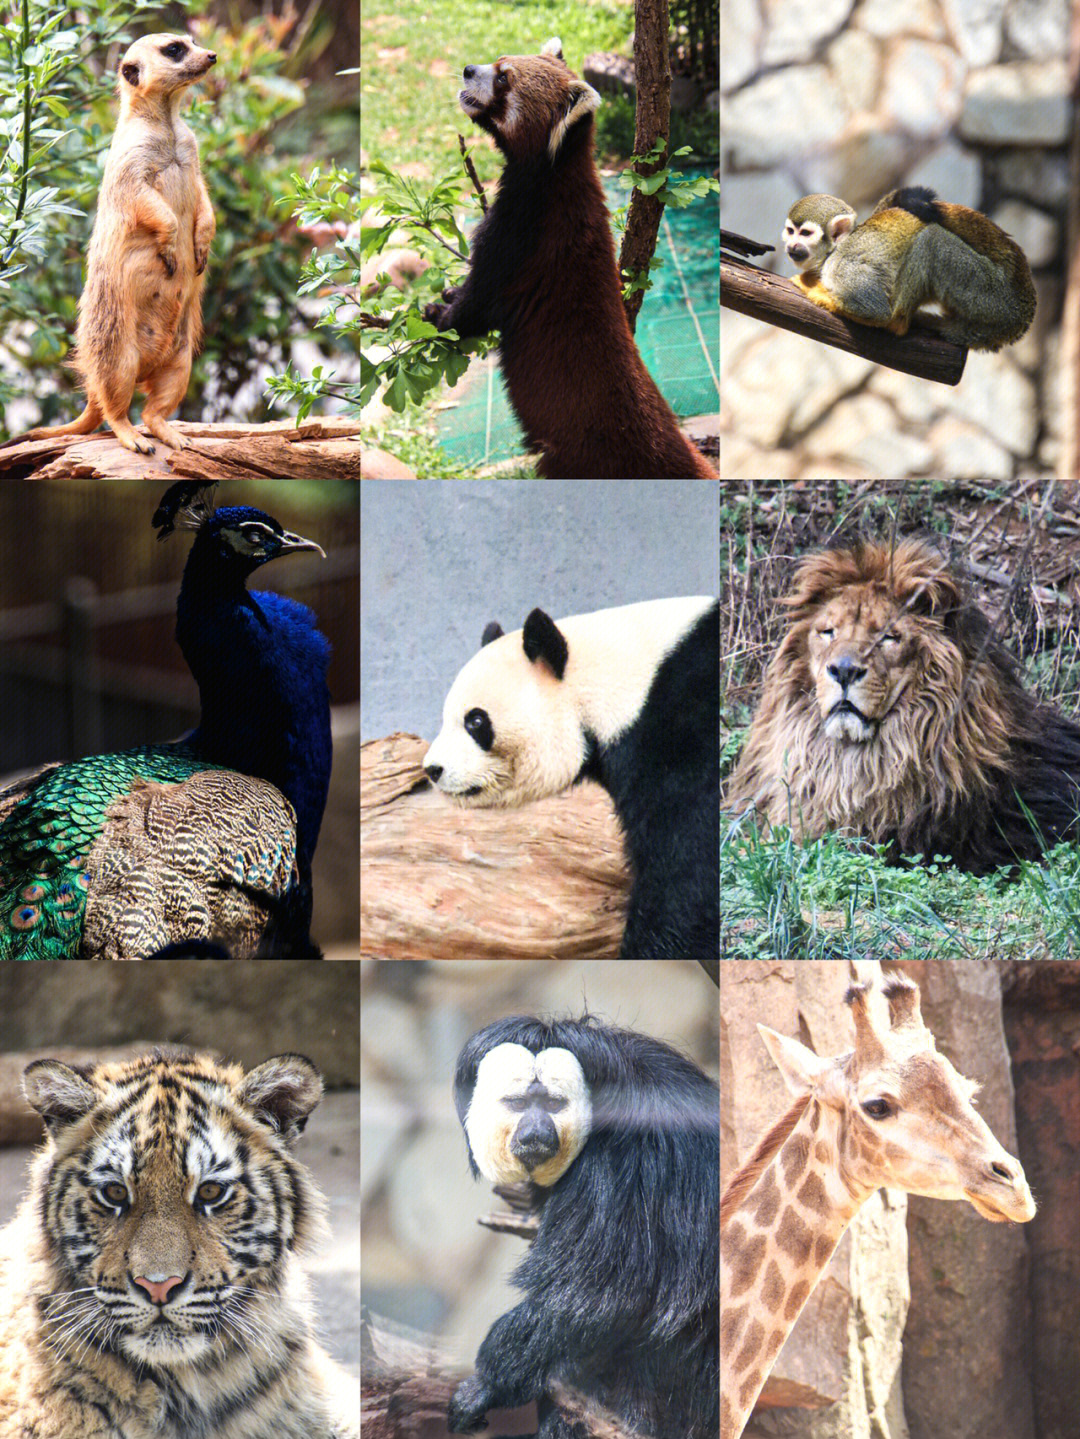 云南野生动物园有多大图片